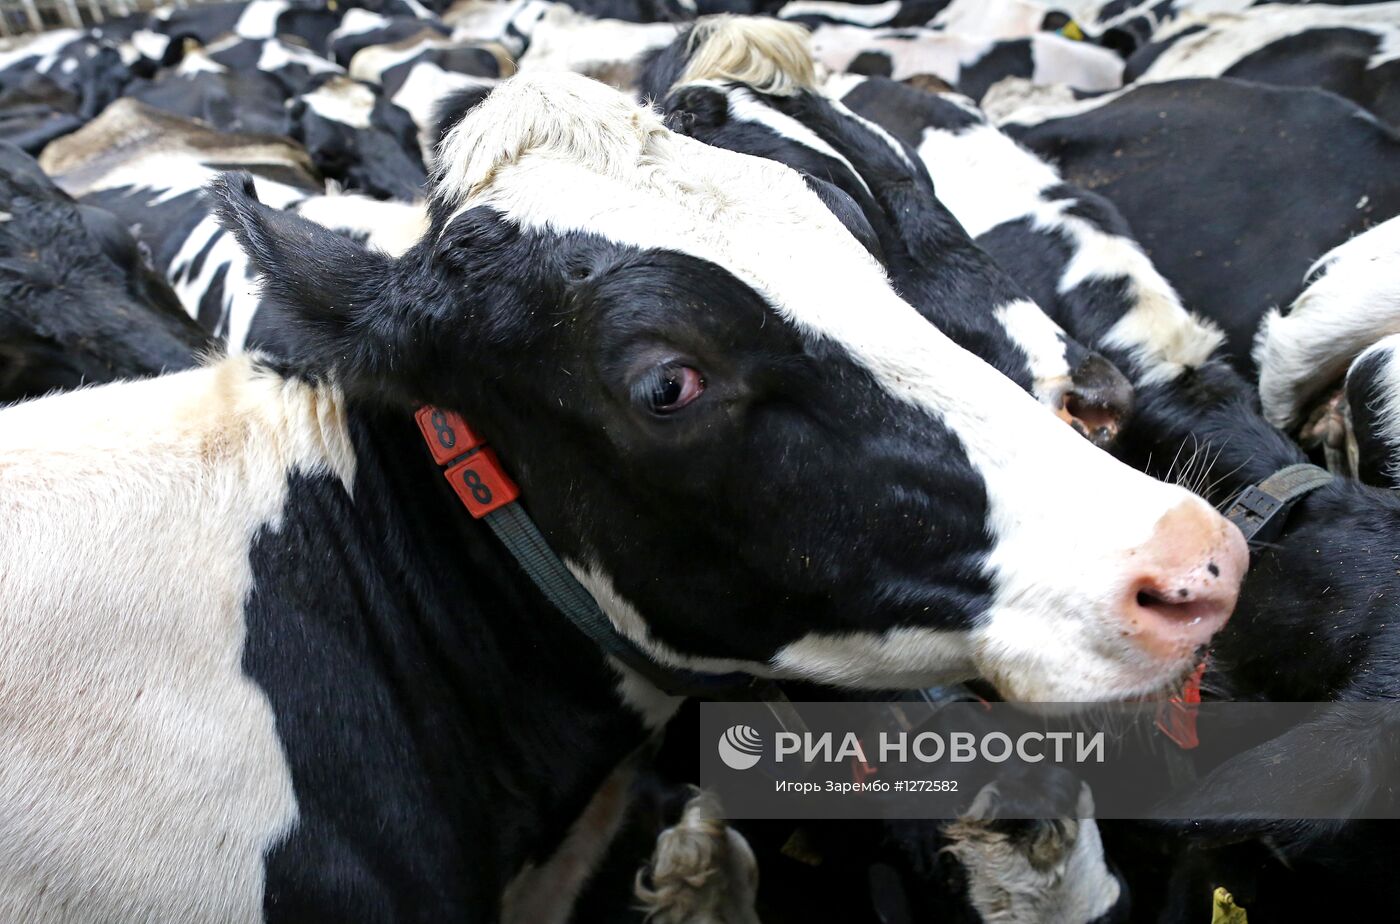 Работа животноводческого комплекса в Калининградской области